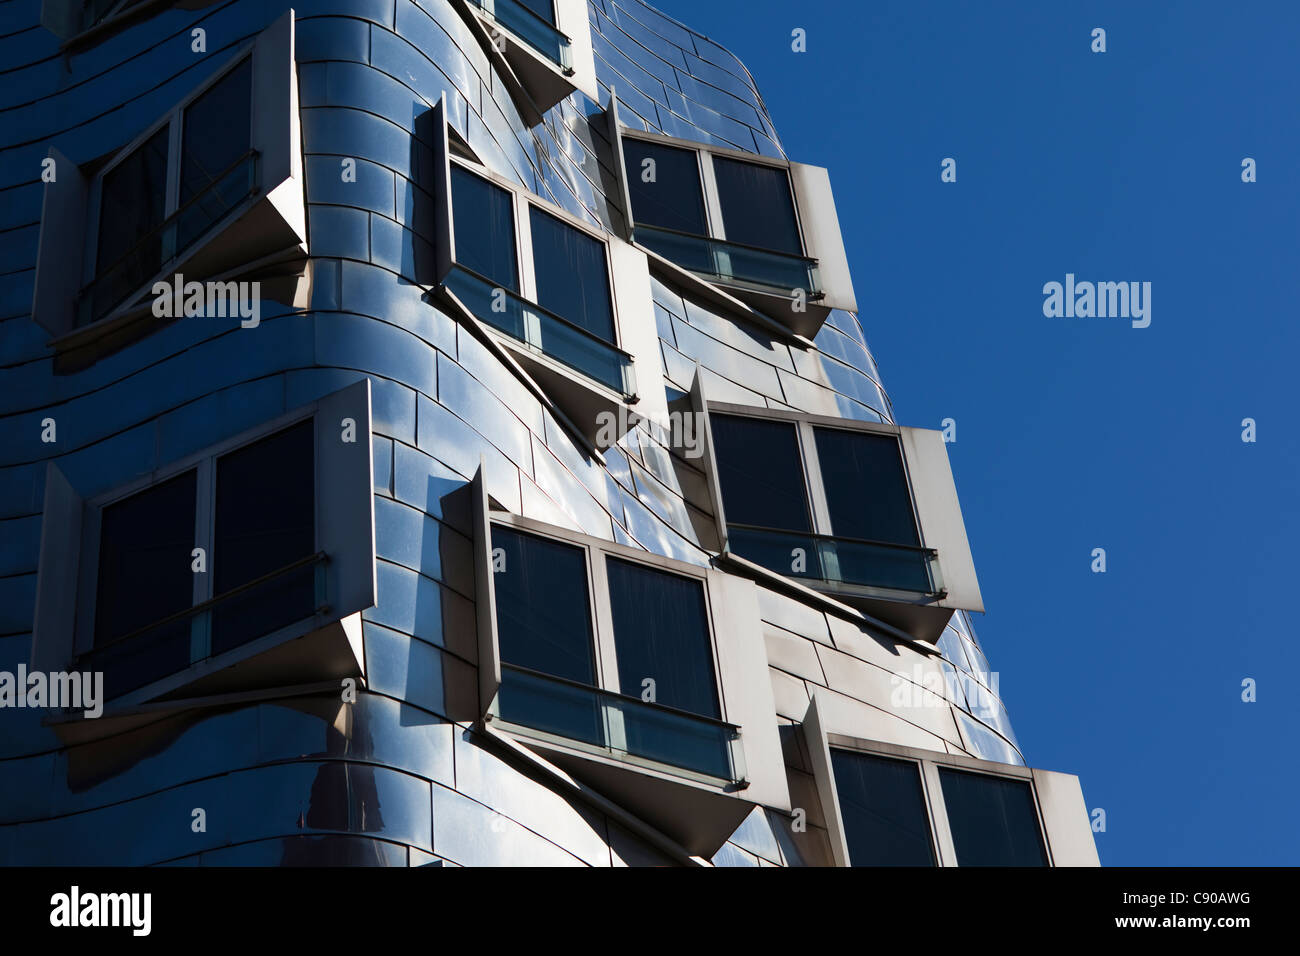 Neuer Zollhof, Gebäude vom Architekten entworfen, Gehry, Medienhafen, Düsseldorf, Nordrhein-Westfalen, Deutschland, Europa Stockfoto